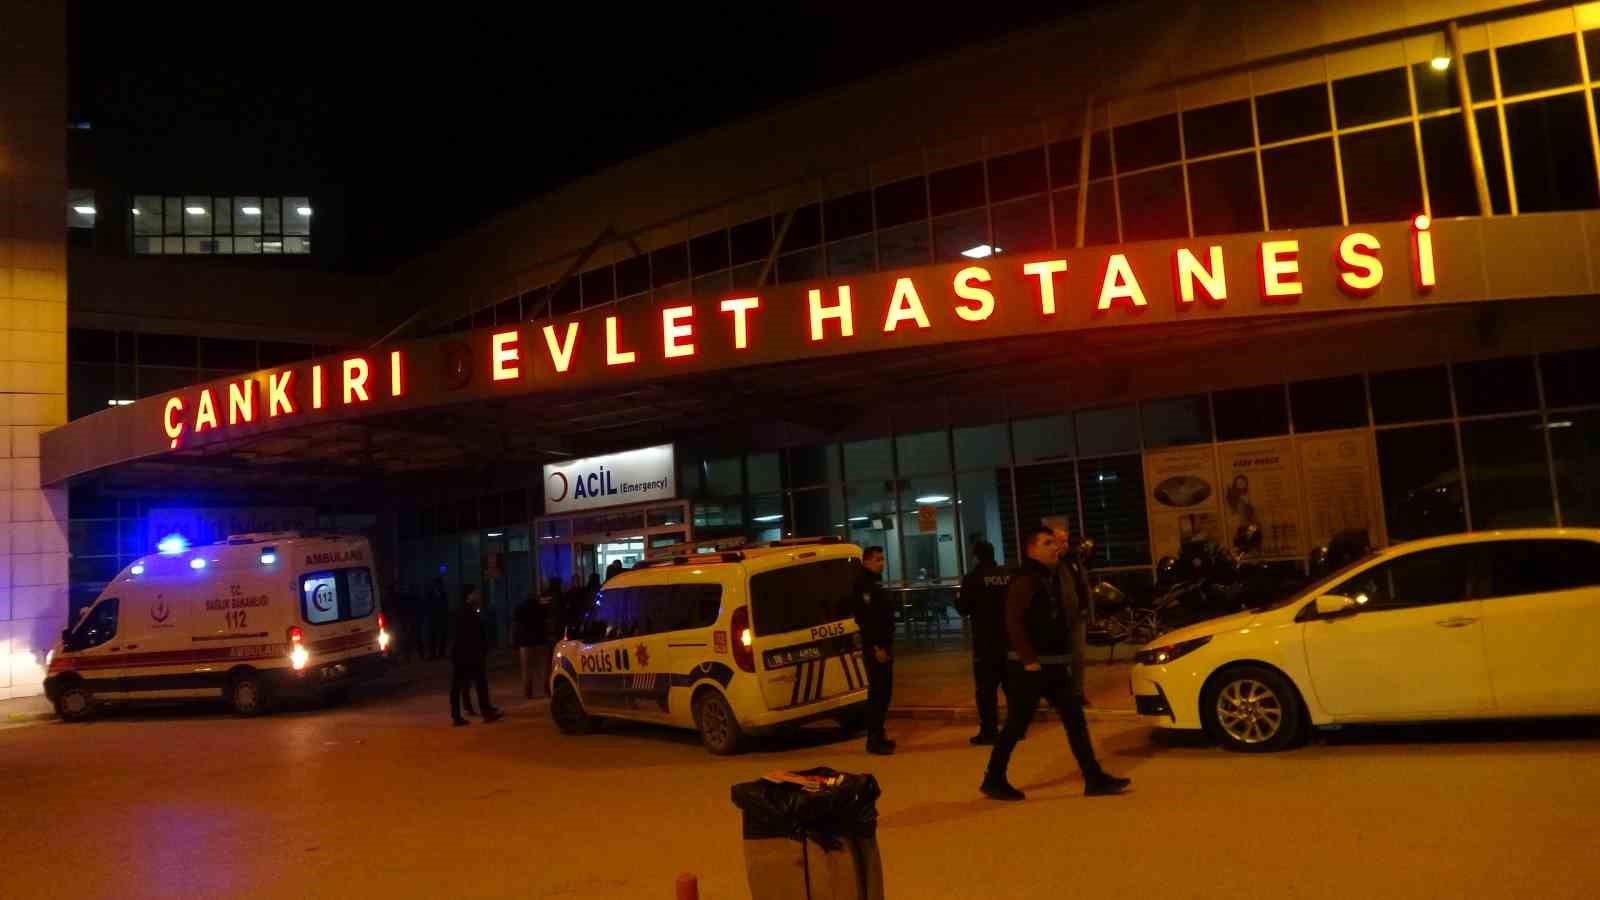 Çankırı'da devlet hastanesinde görevli doktor, bir hastanın eşi tarafından darp edildi. Olayla ilgili saldırgan gözaltına alındı.